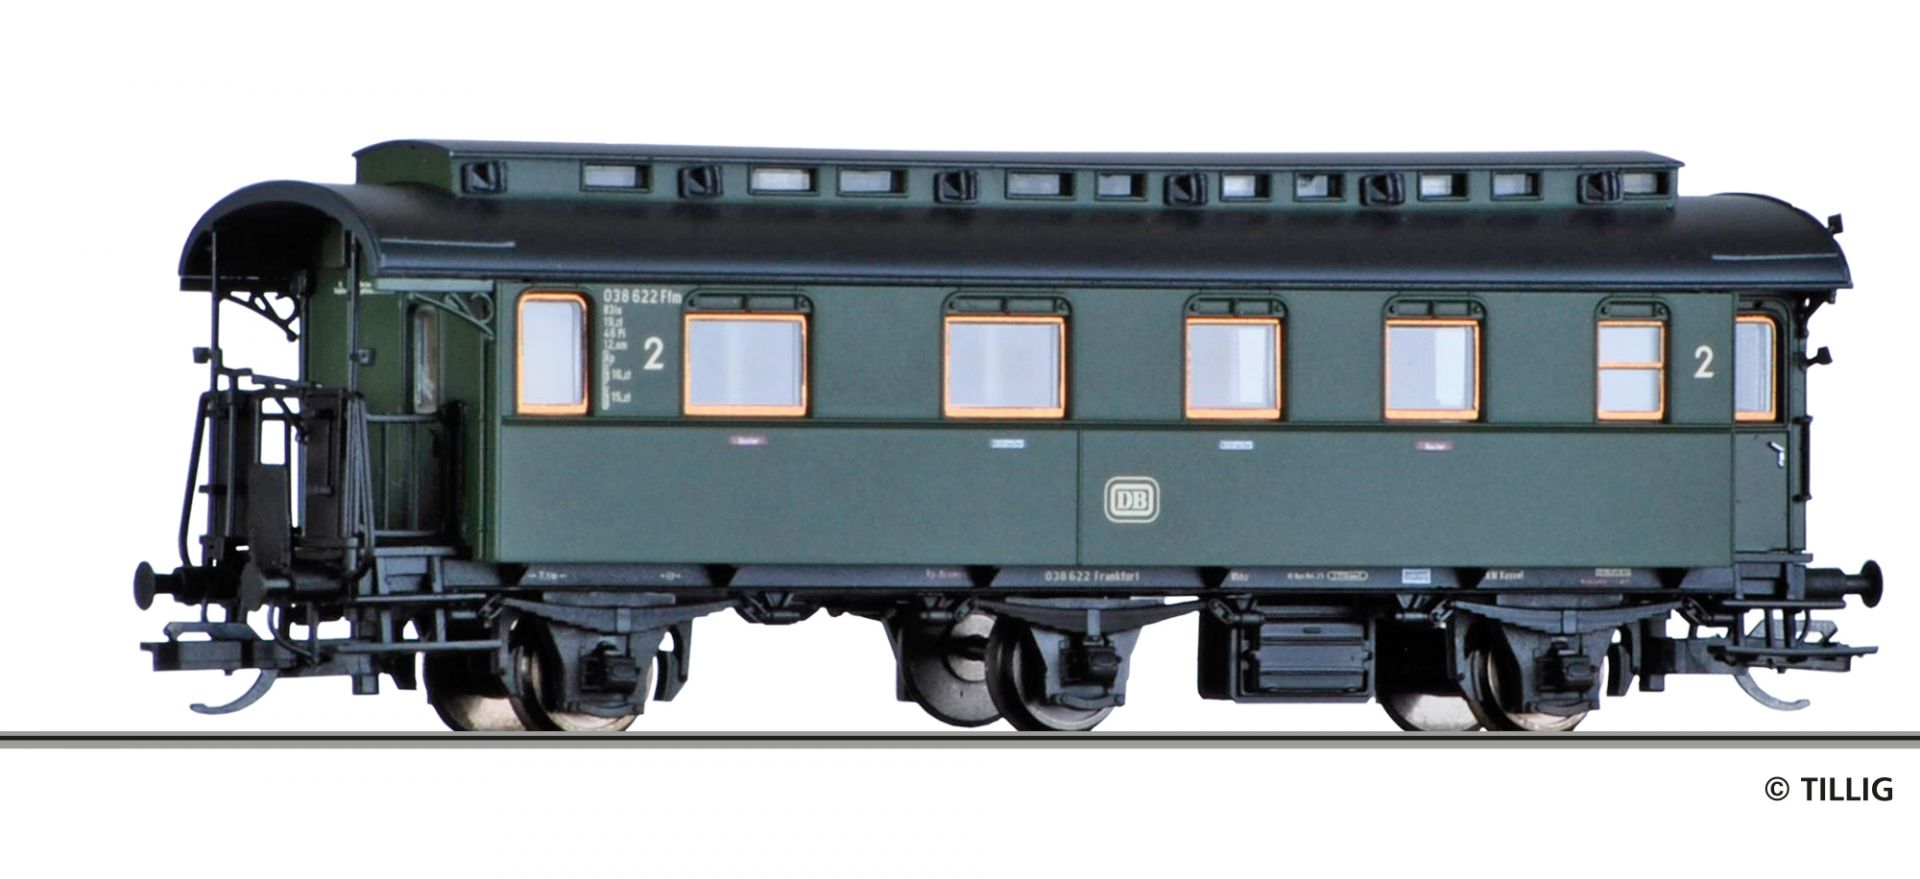 16036 | Reisezugwagen DB -werksseitig ausverkauft-